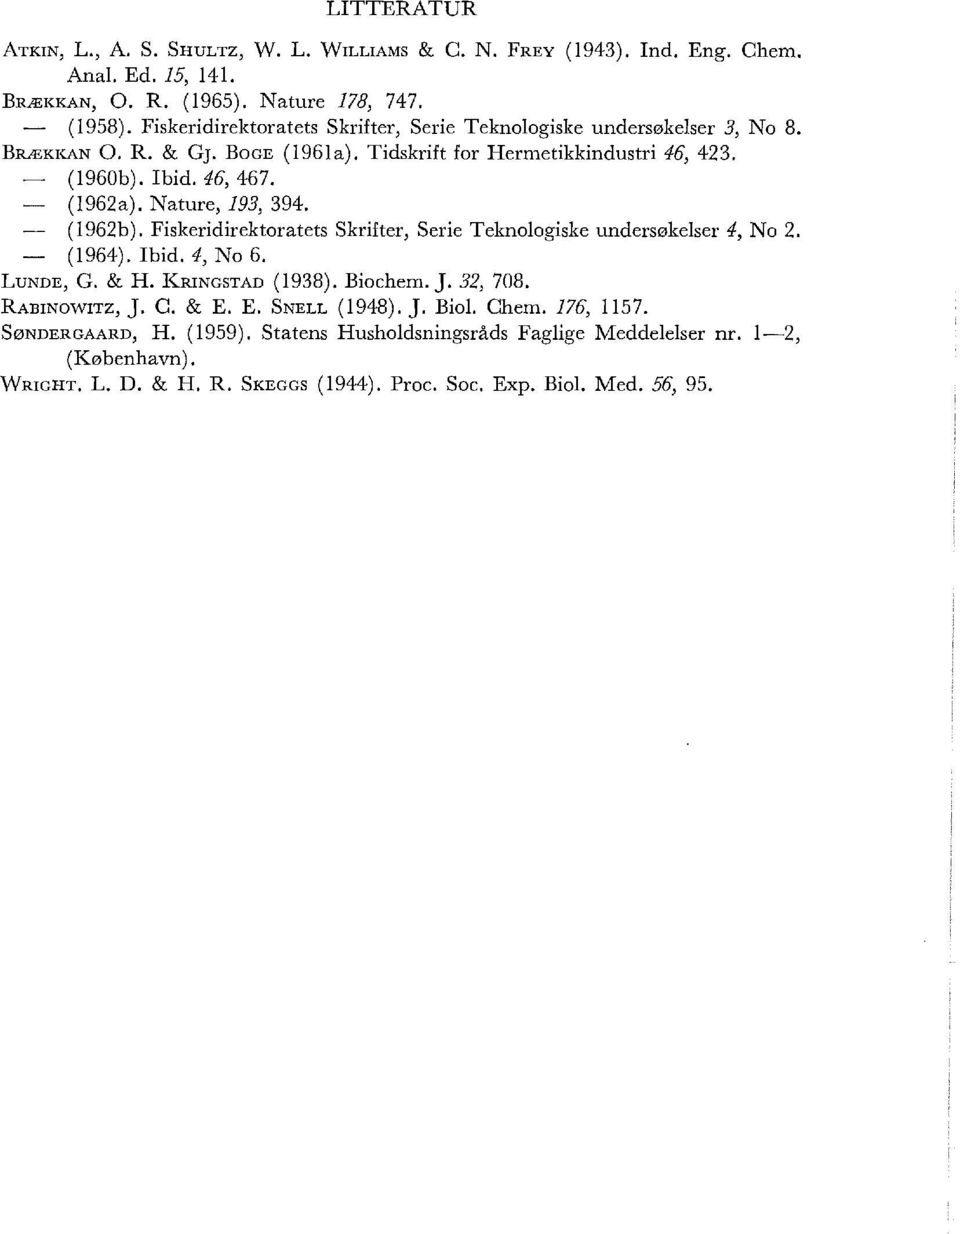 Nature, 193, 394. (1962b). Fiskeridirektoratets Skrifter, Serie Teknologiske undersøkelser 4, No 2. (1964). Ibid. 4, No 6. LuNDE, G. & H. KRINGSTAD (1938). Biochem. J. 32, 708.